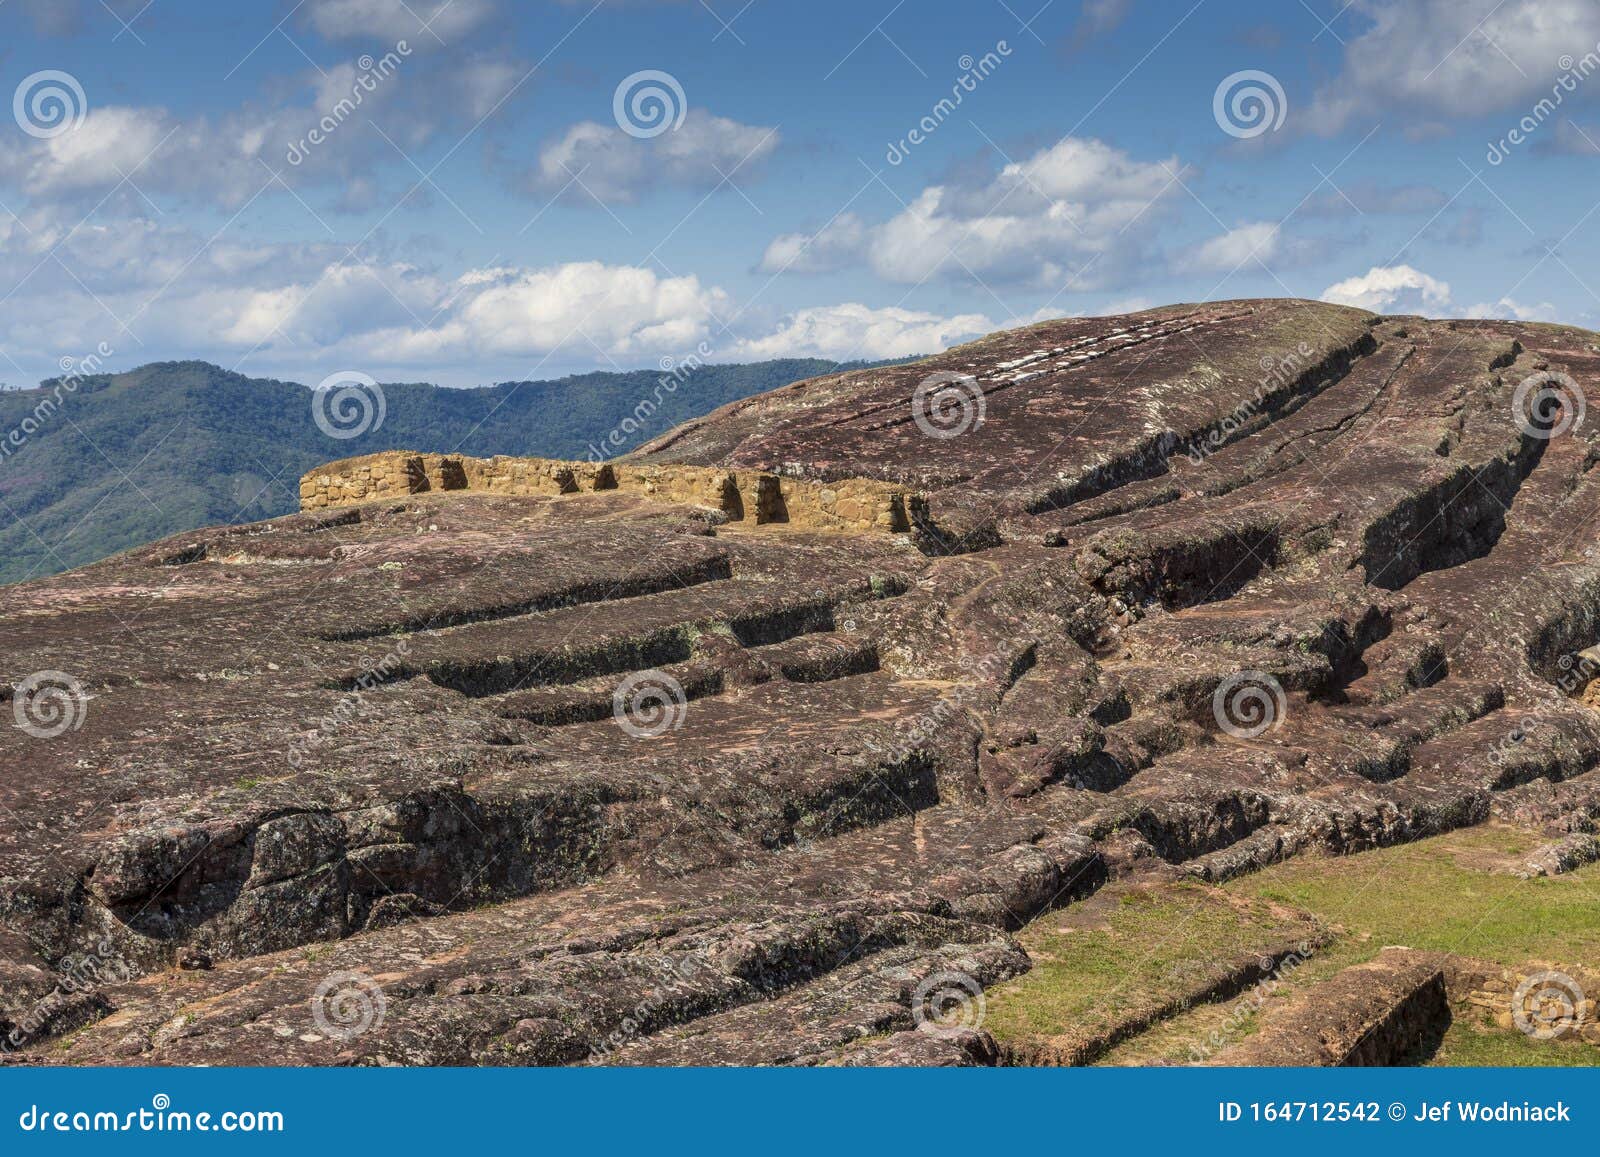 remains of el fuerte pre inca archeological site near samaipata